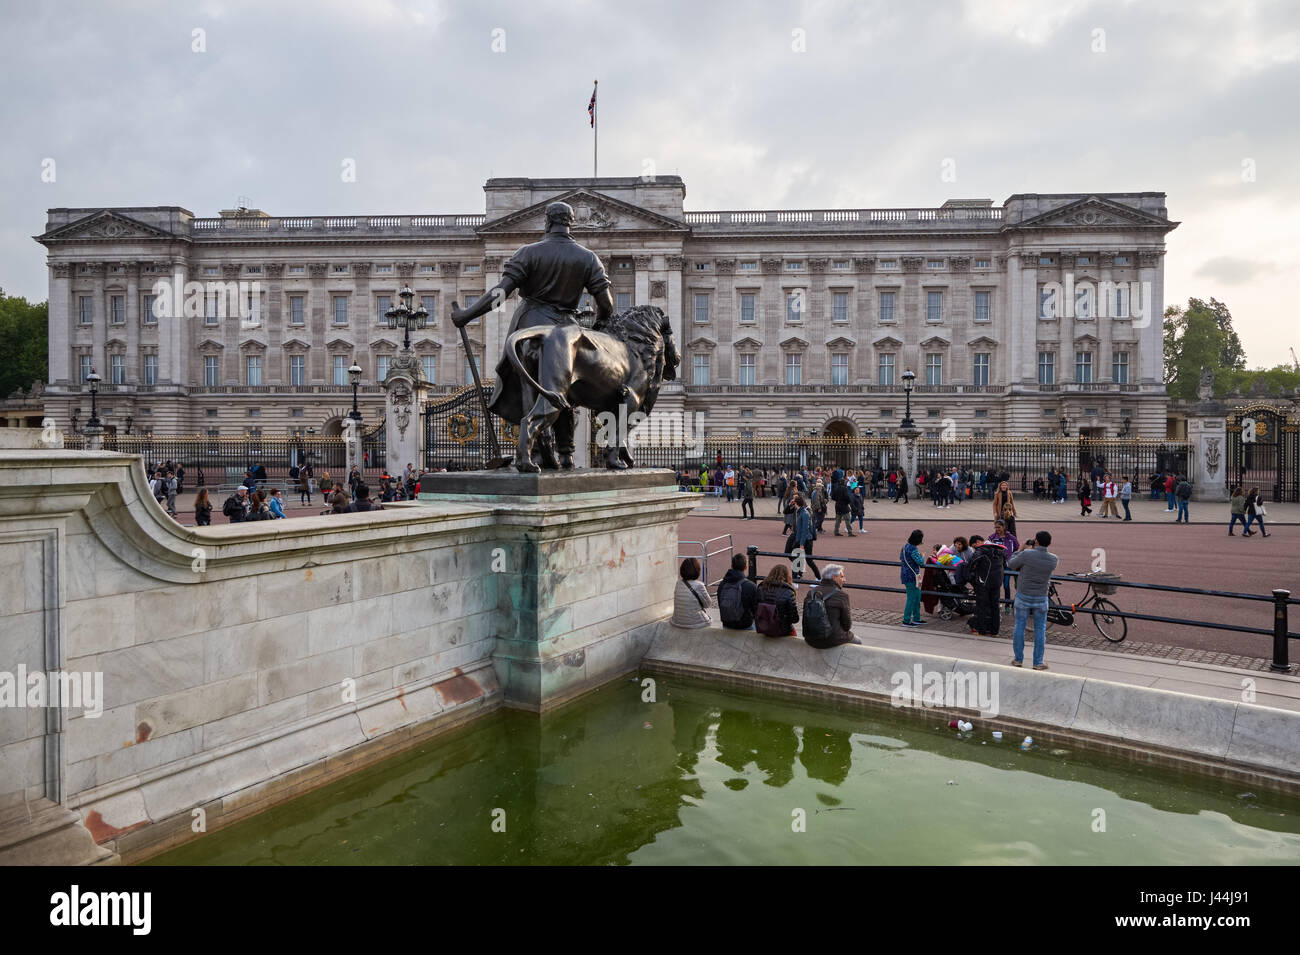 Les touristes devant le palais de Buckingham à Londres, Angleterre Royaume-Uni UK Banque D'Images